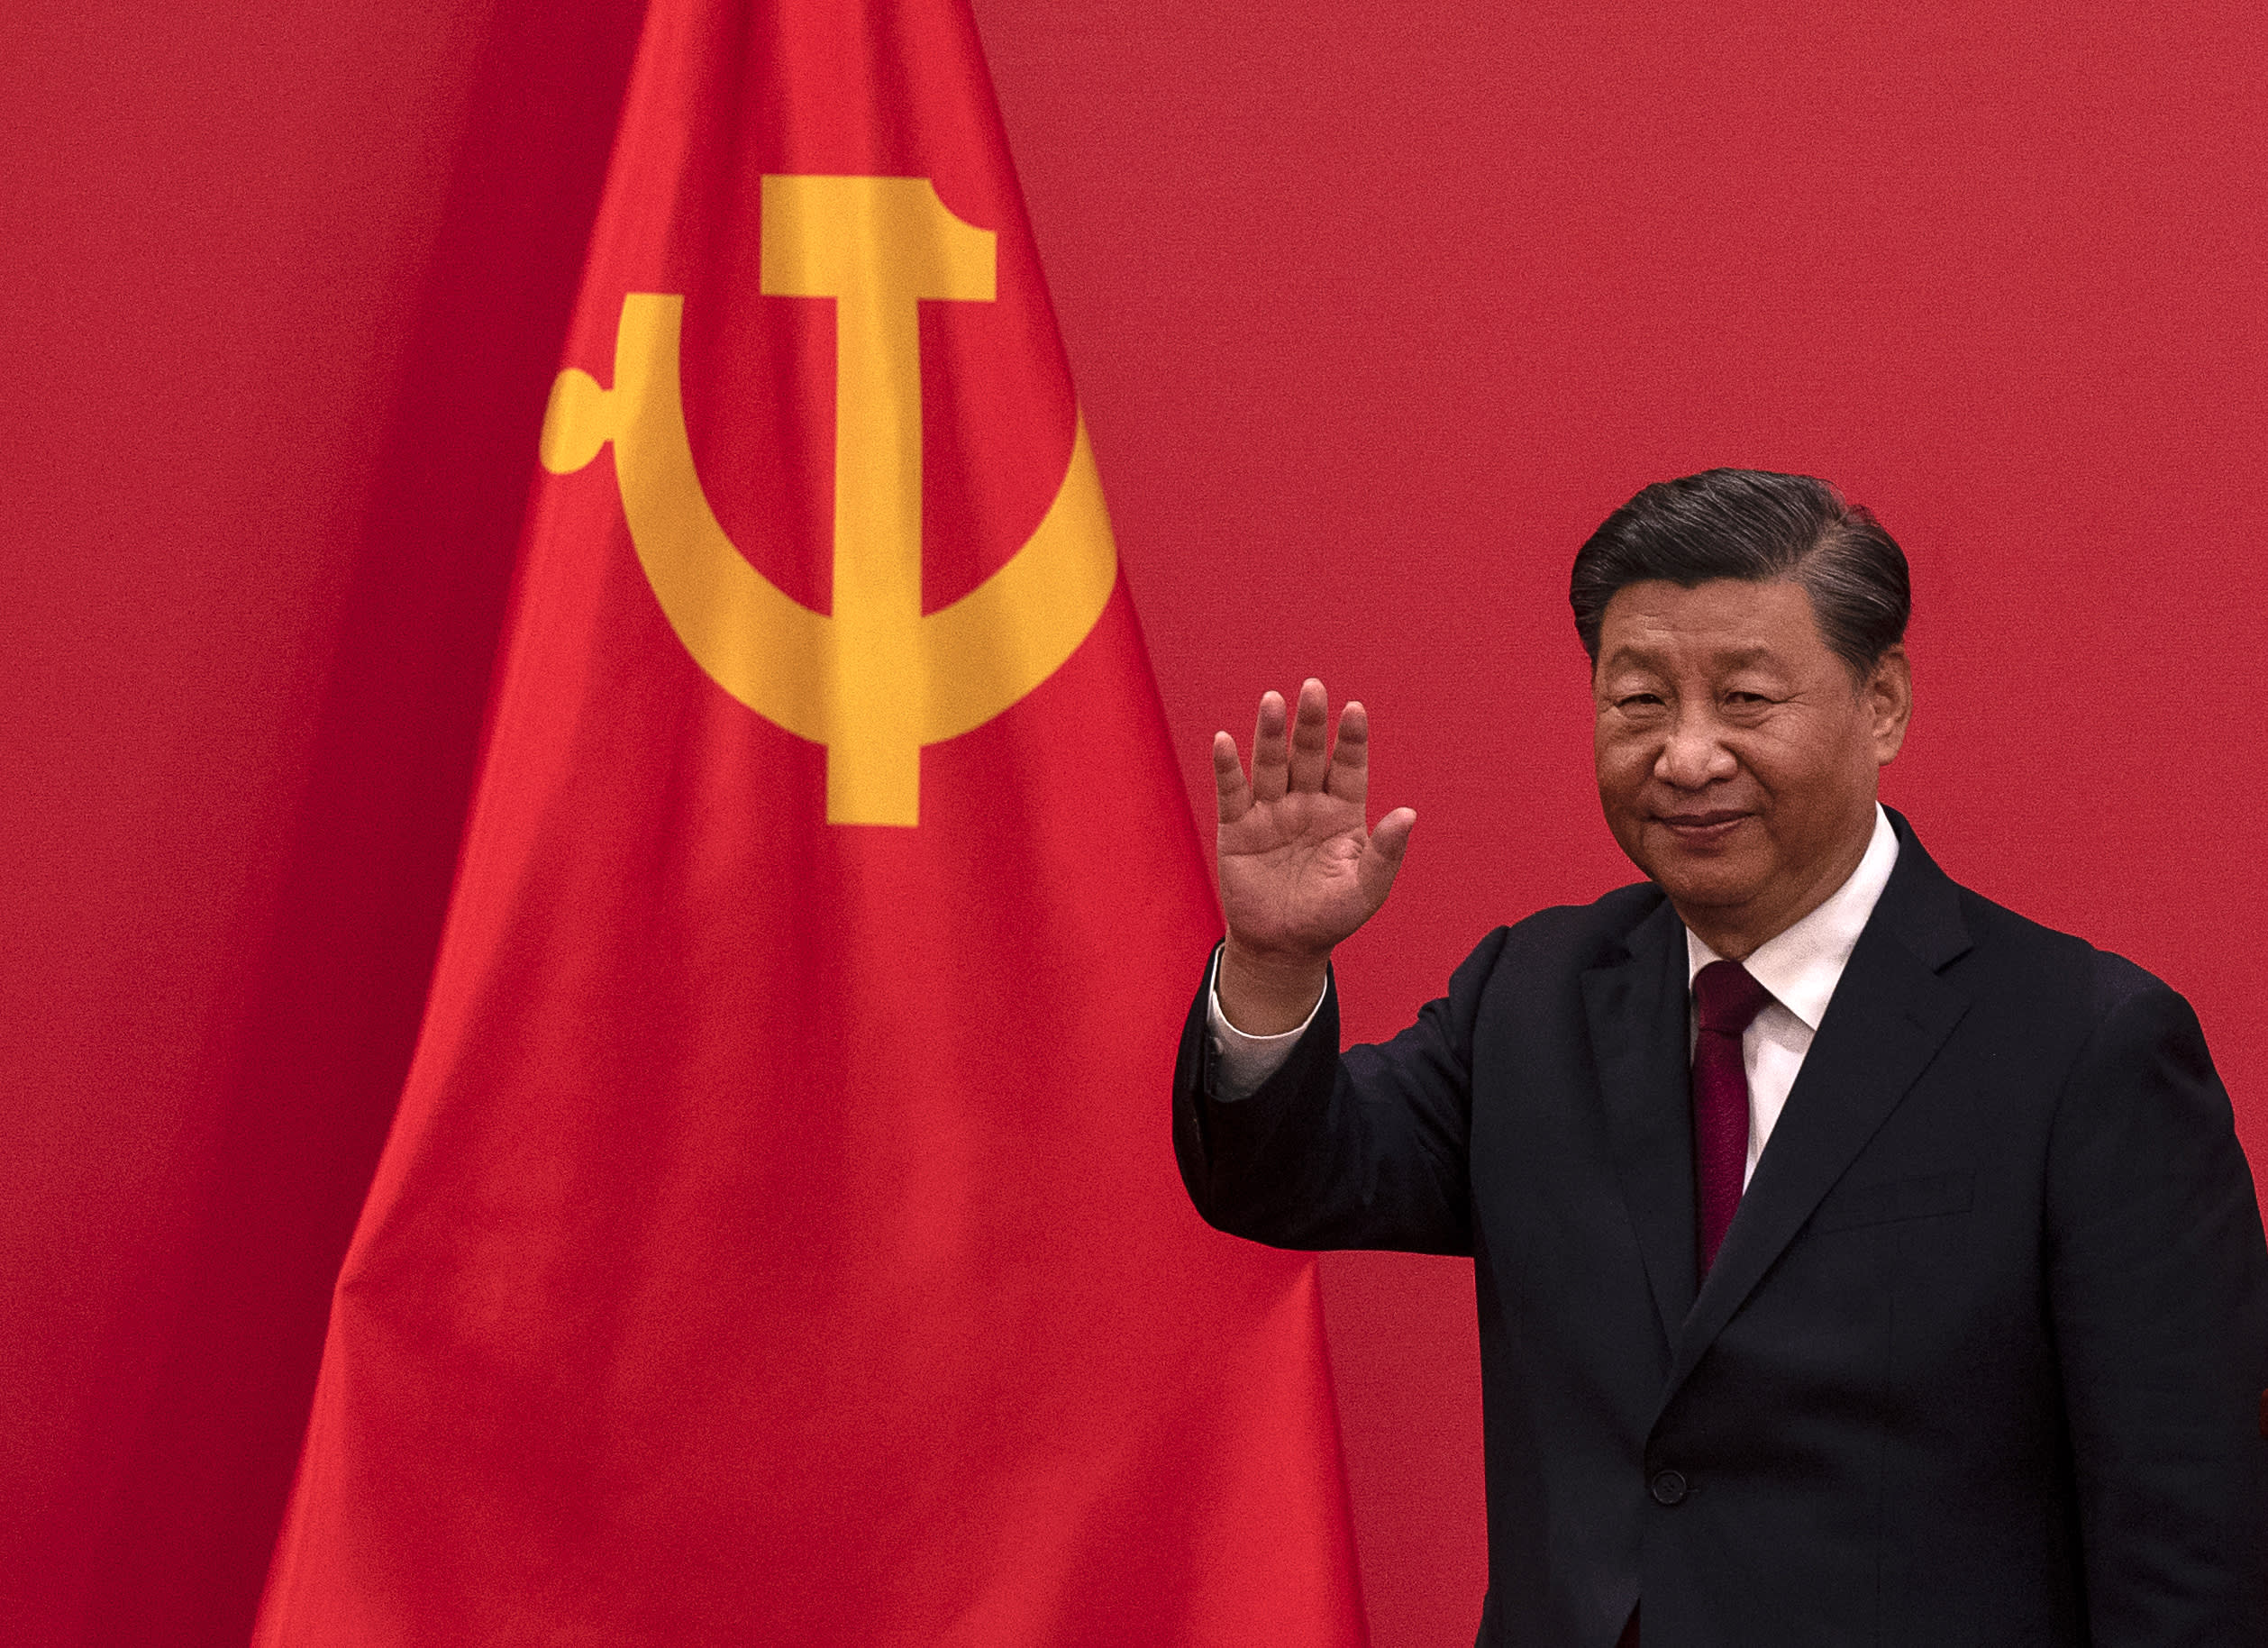 चीन के शी अभूतपूर्व तीसरे कार्यकाल के लिए राष्ट्रपति चुने गए हैं